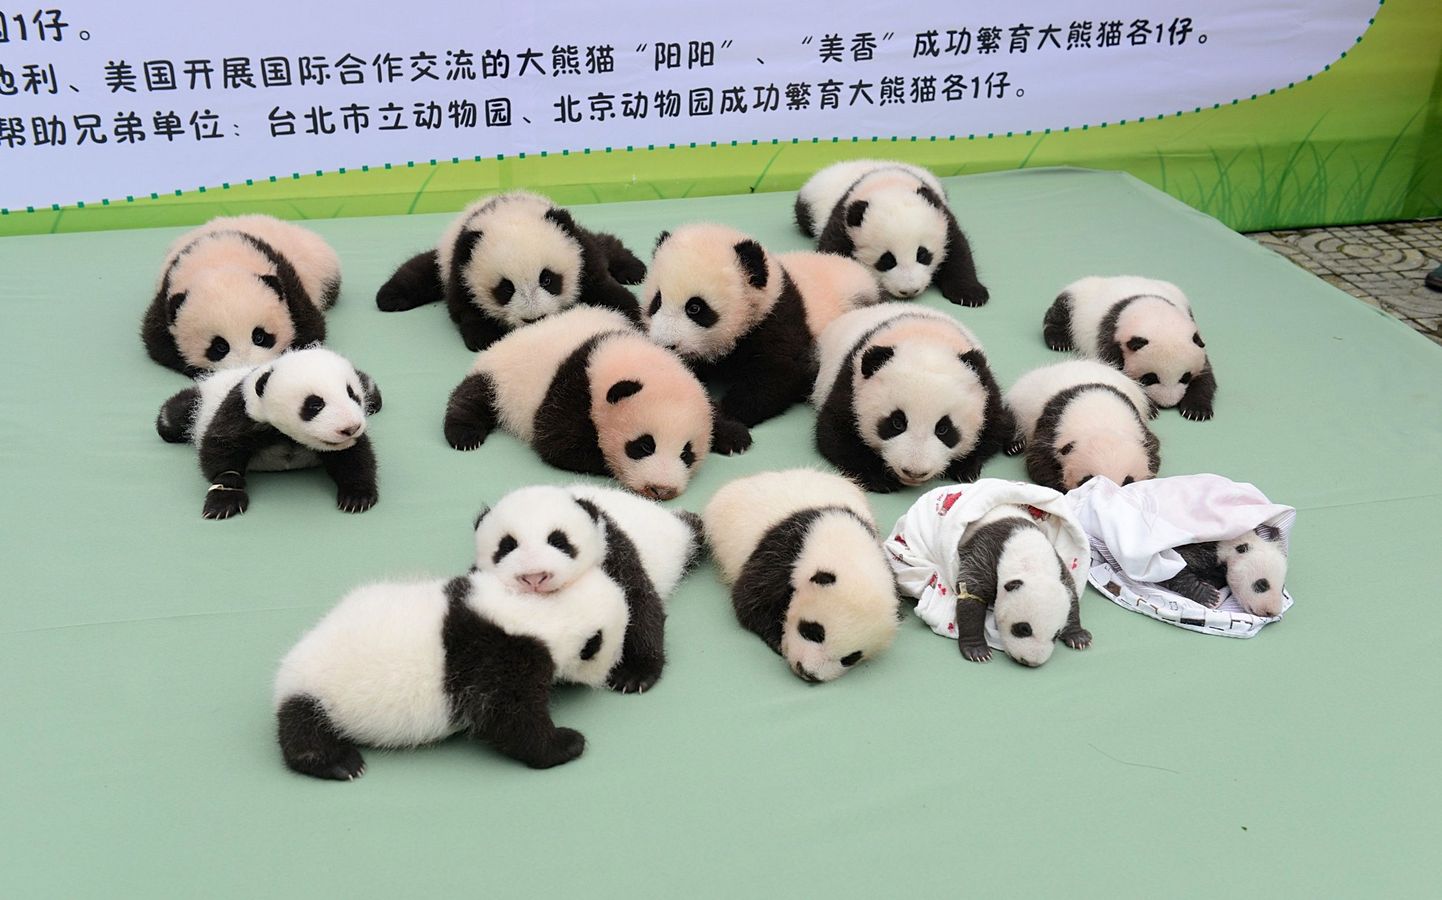 Pandabeebid Hiinas asuvas Bifengxia aretuskeskuses.